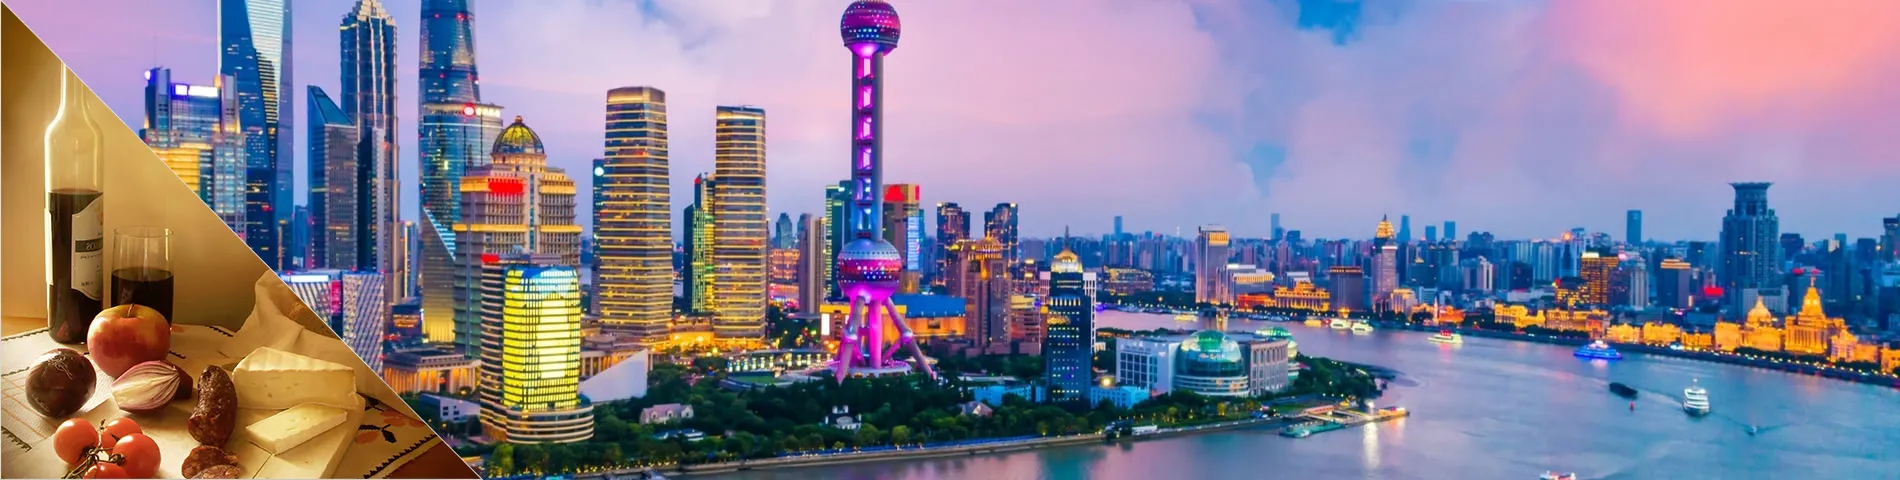 Шанхай - китайська та пізнання культури